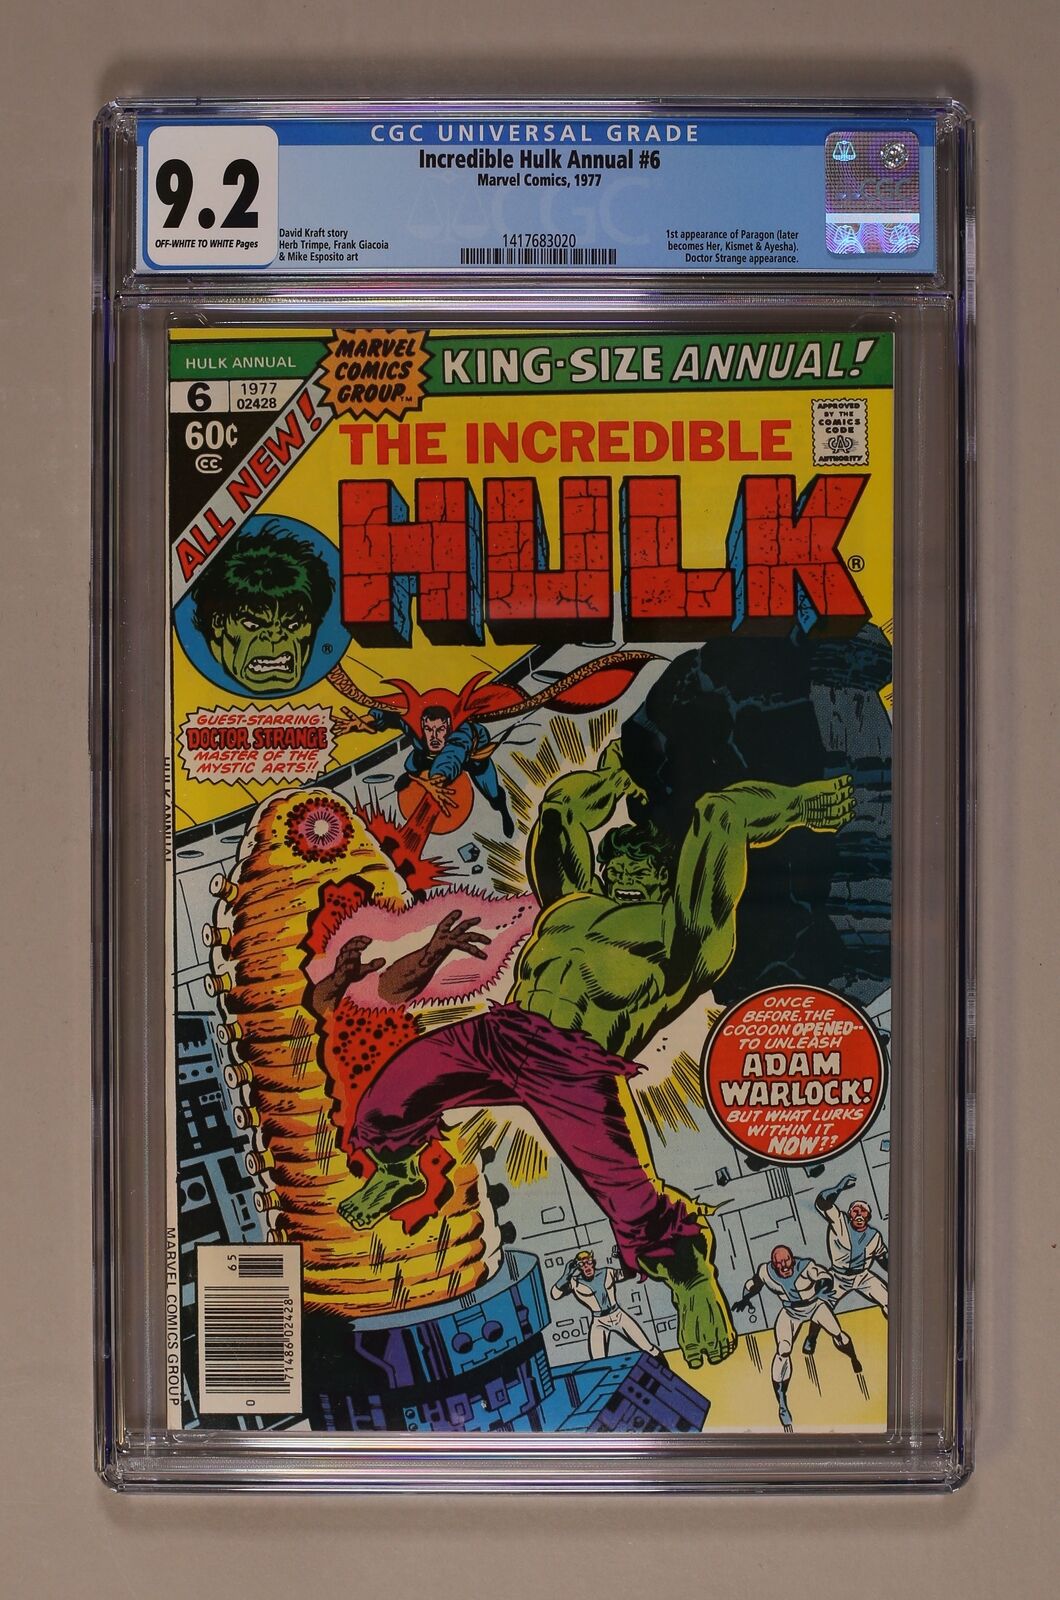 Incredible Hulk Annual #6 CGC 9.2 1977 1417683020